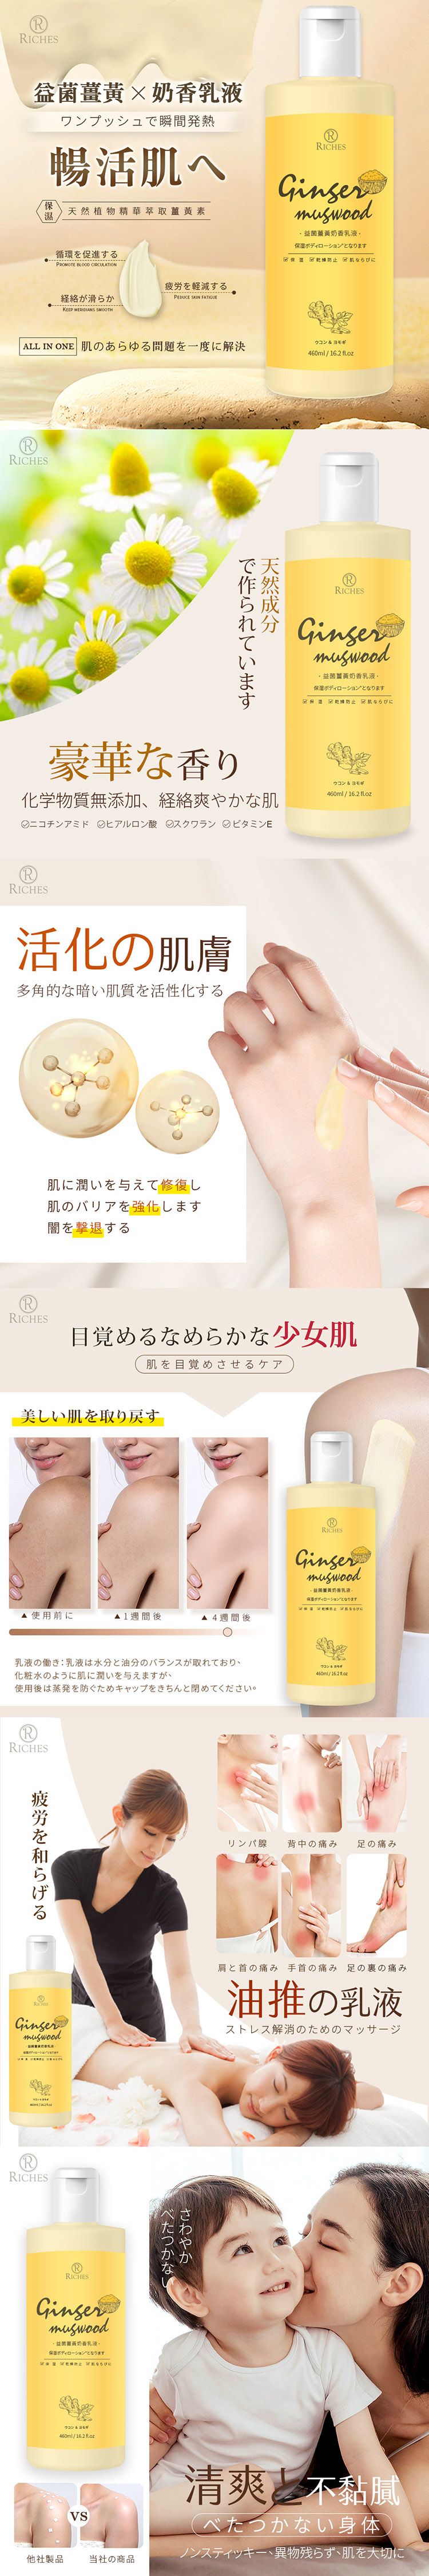 臉部保養 乳液 修復 臉部保養 japan 臉部保養